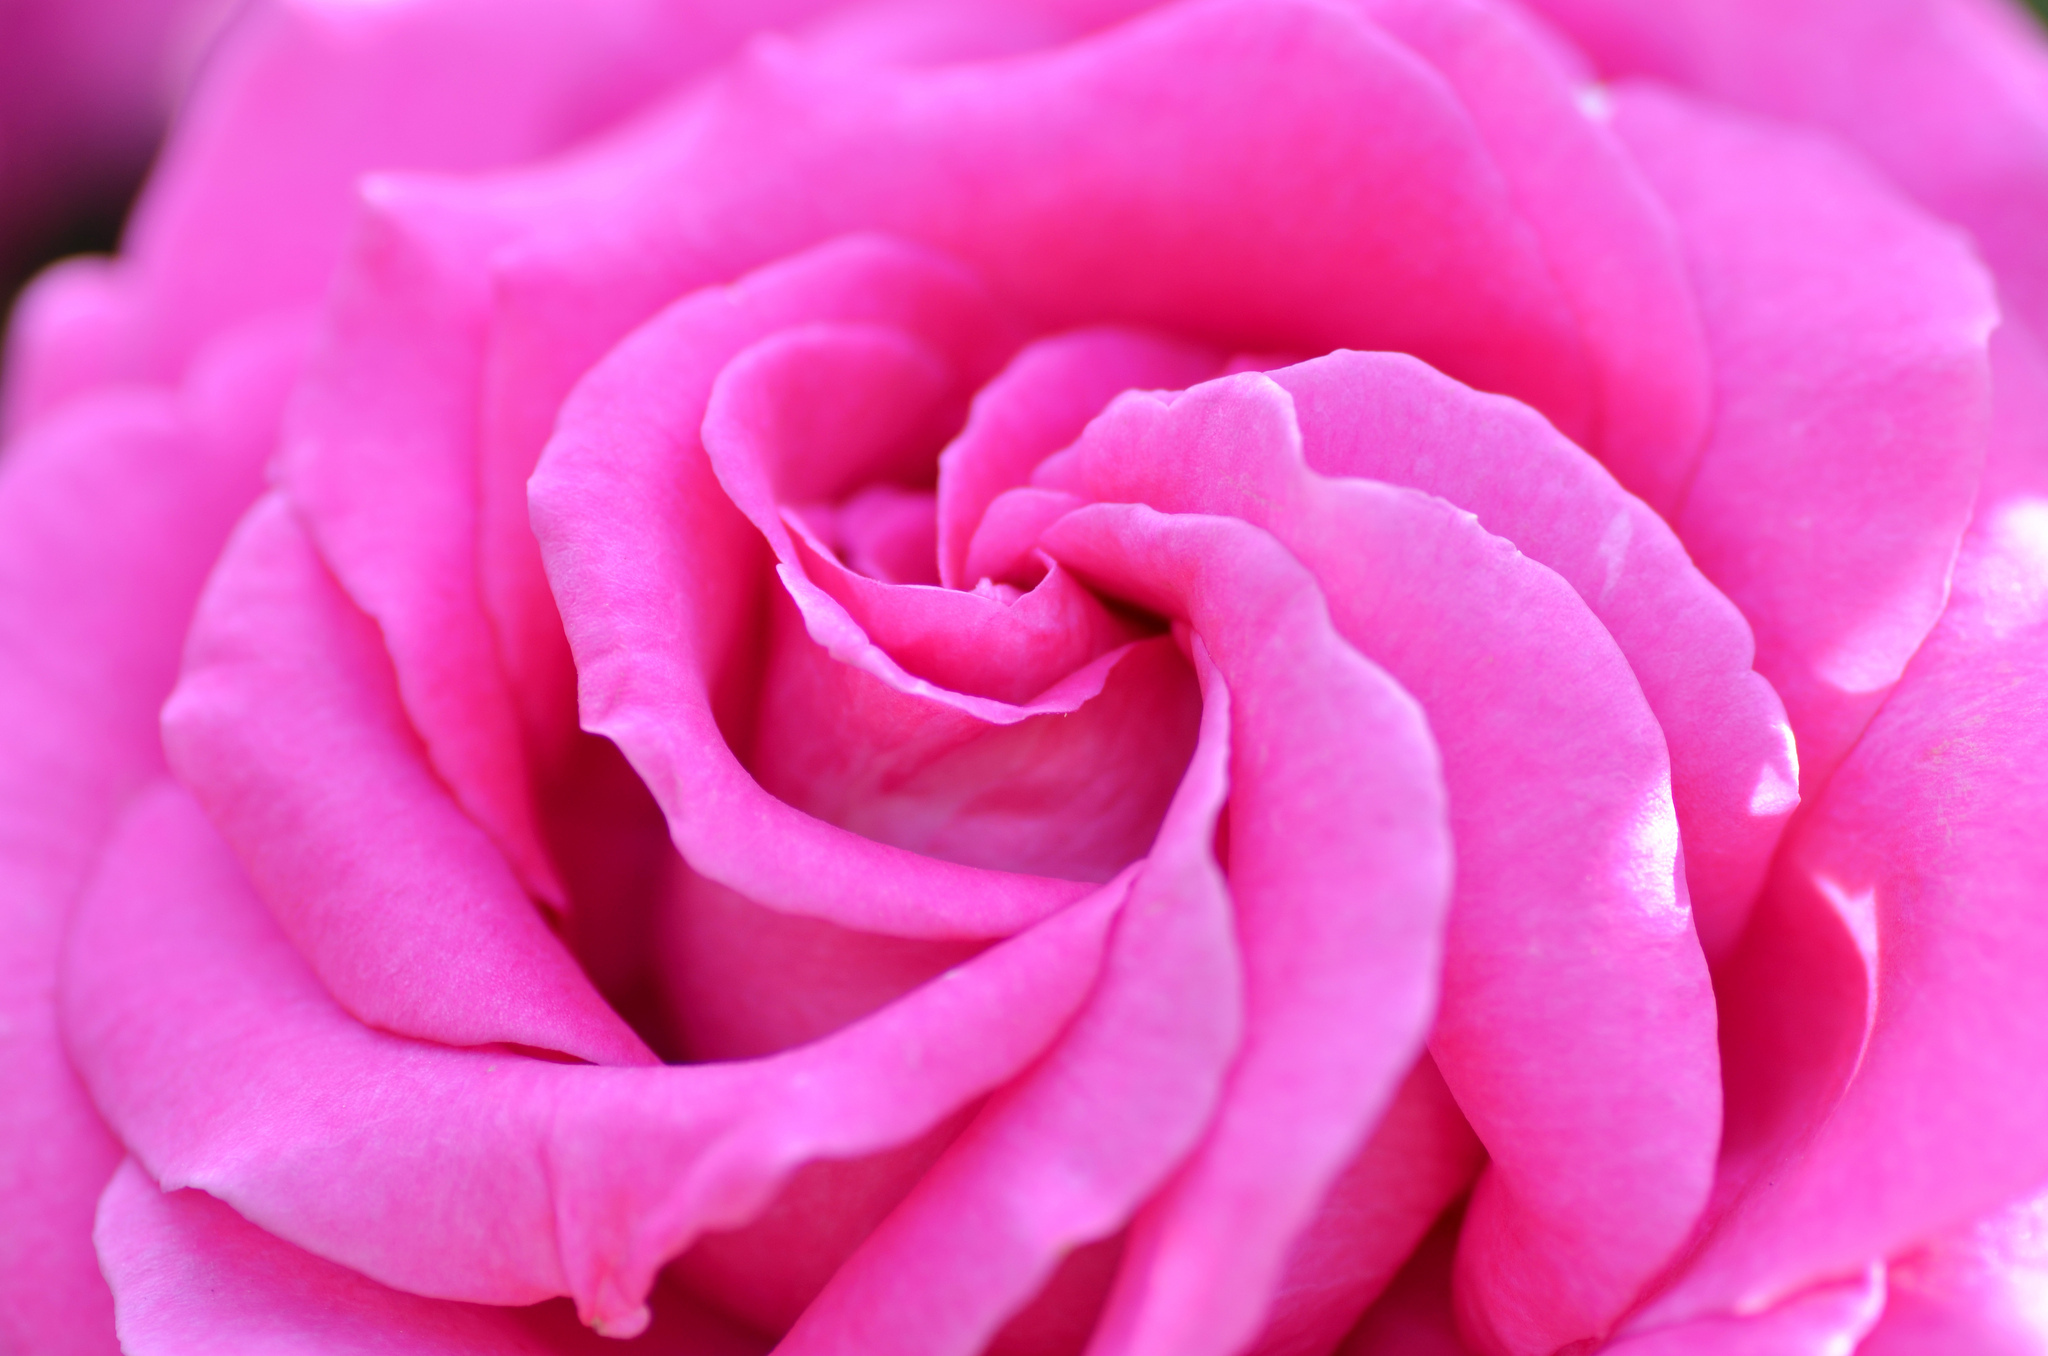 petals, macro, rose flower, rose, bud